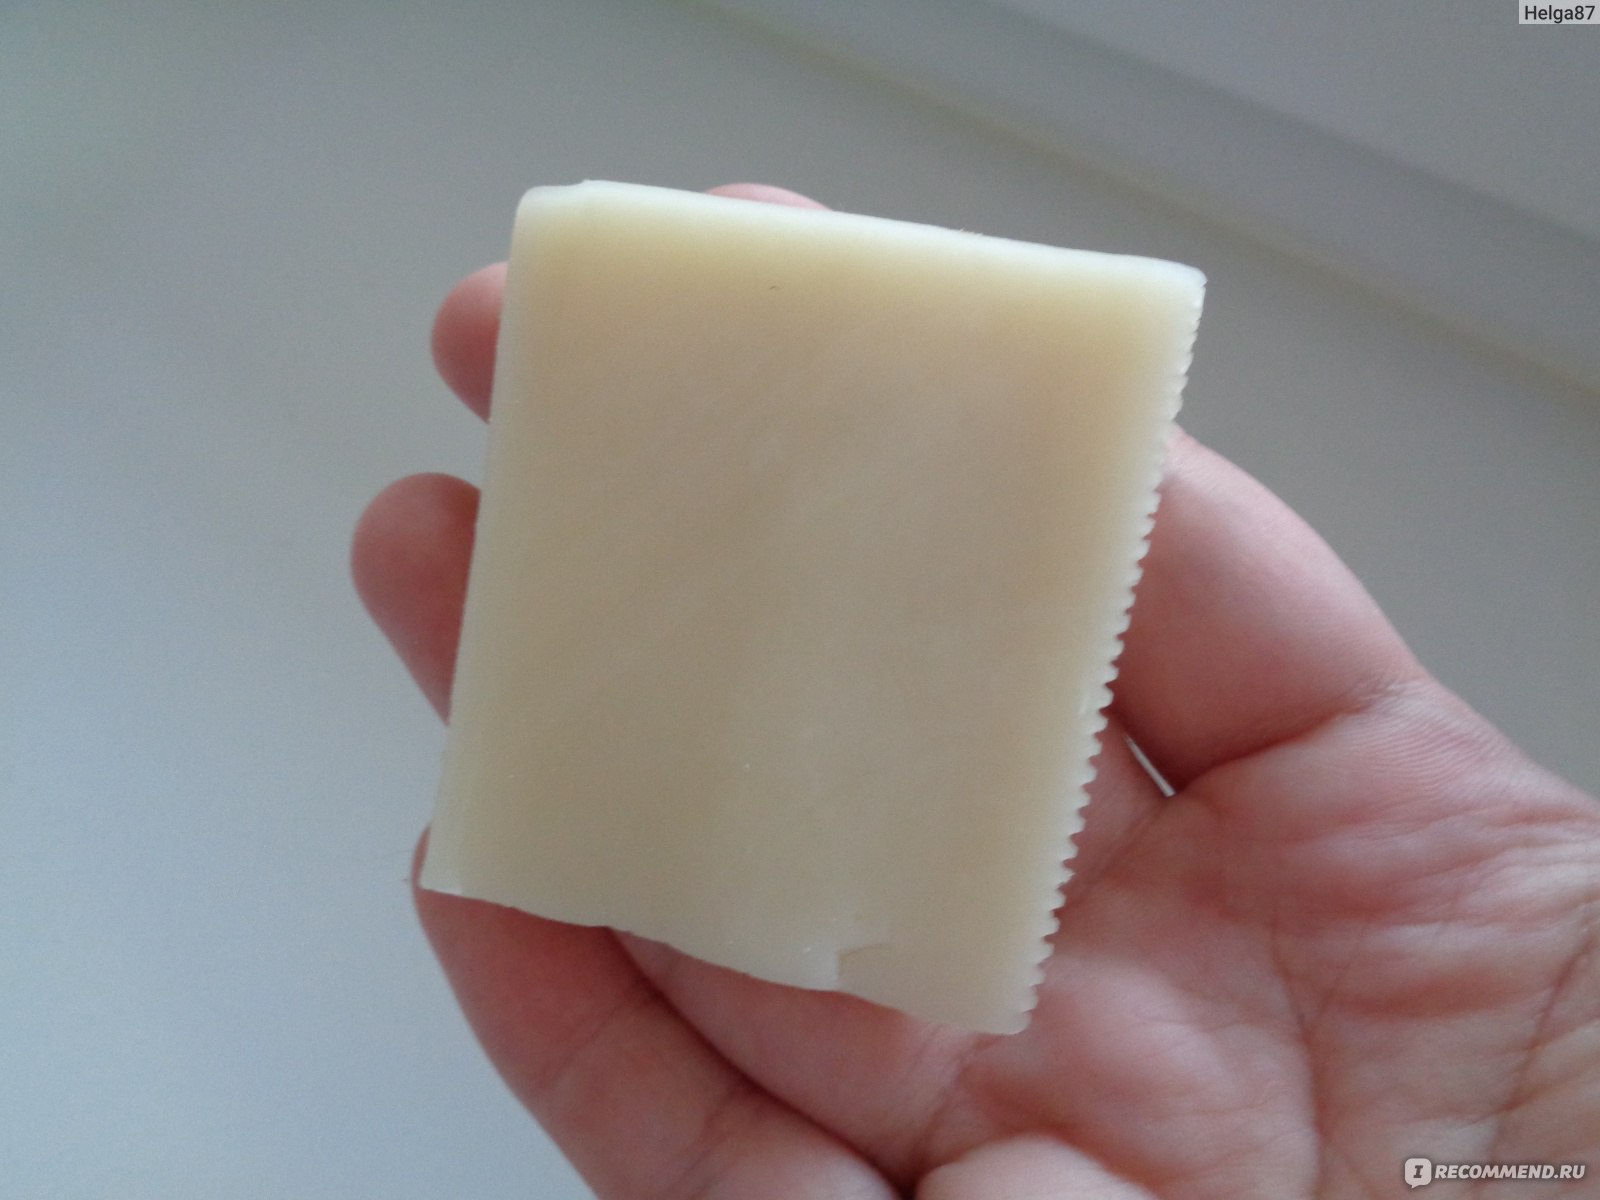 Великолукский молочный комбинат сыр Гойя